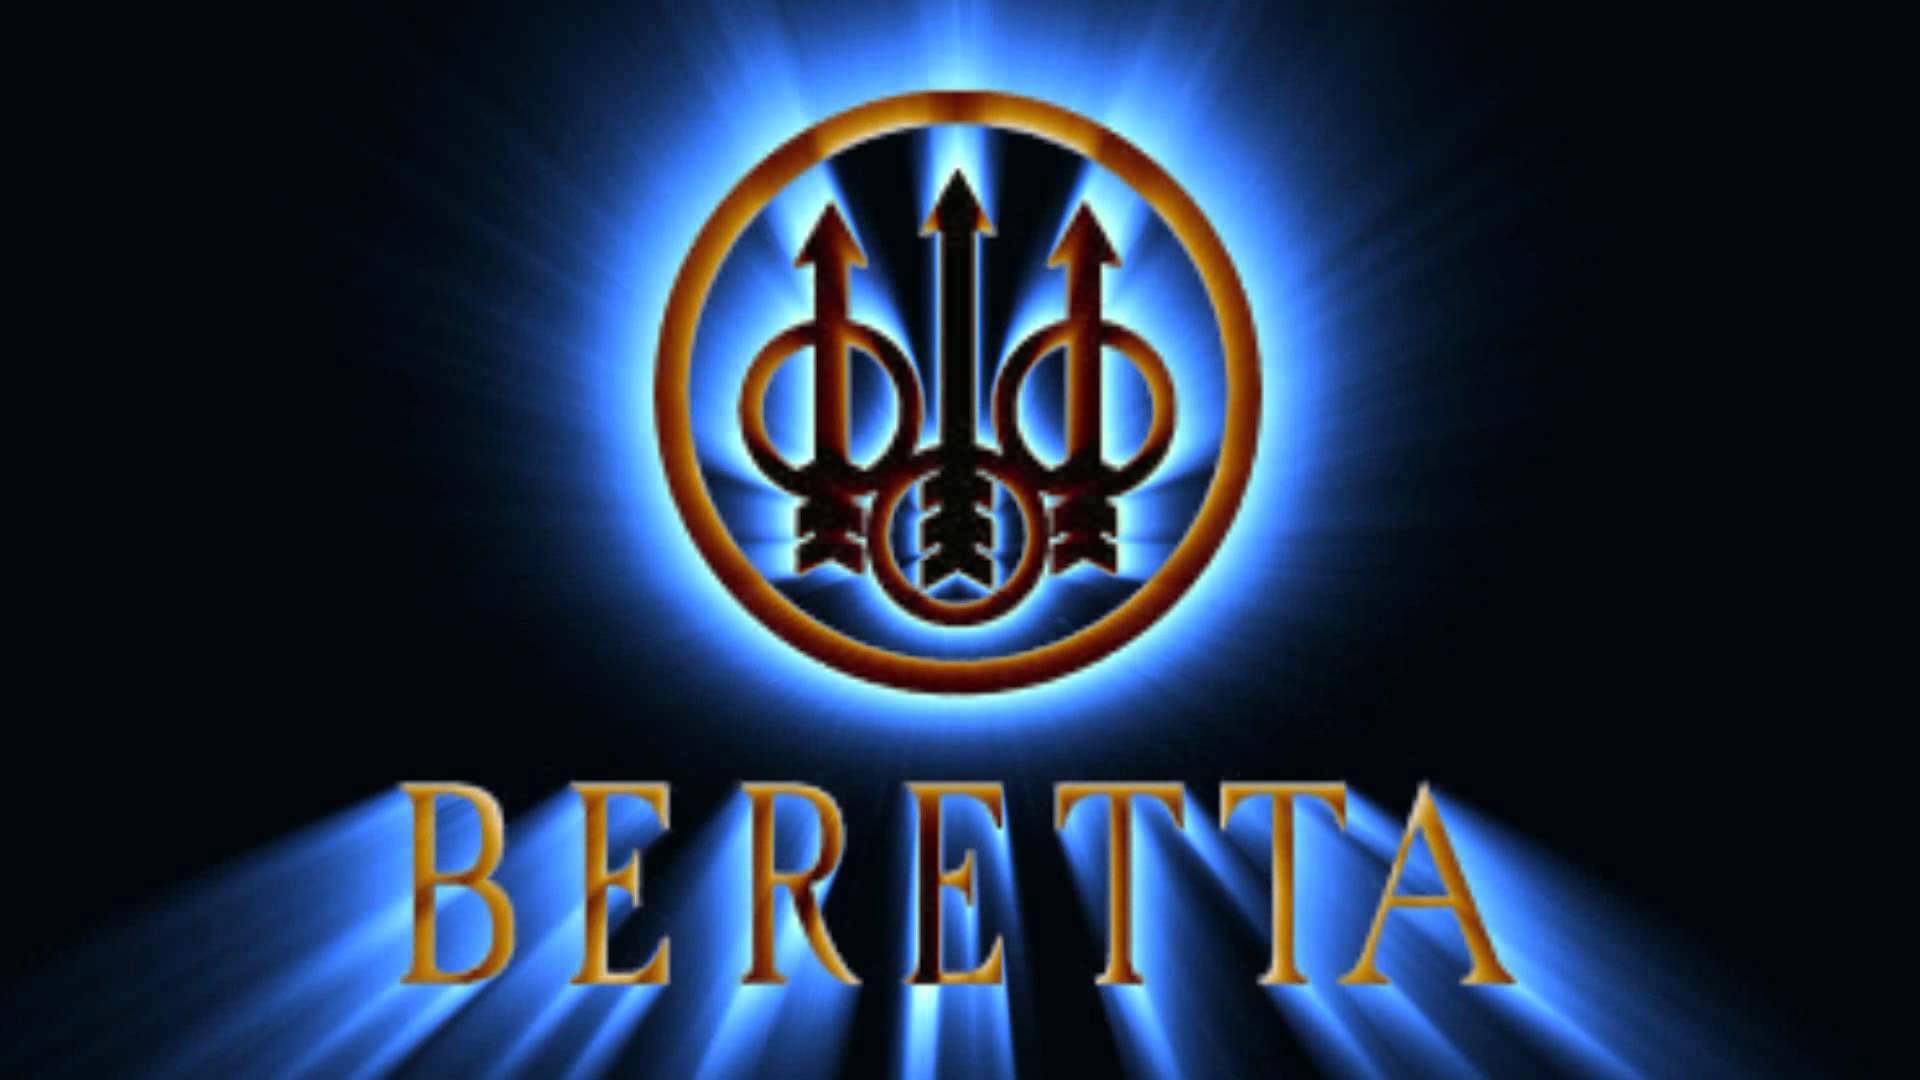 Barreta Logo - Beretta Logo Wallpapers - Wallpaper Cave